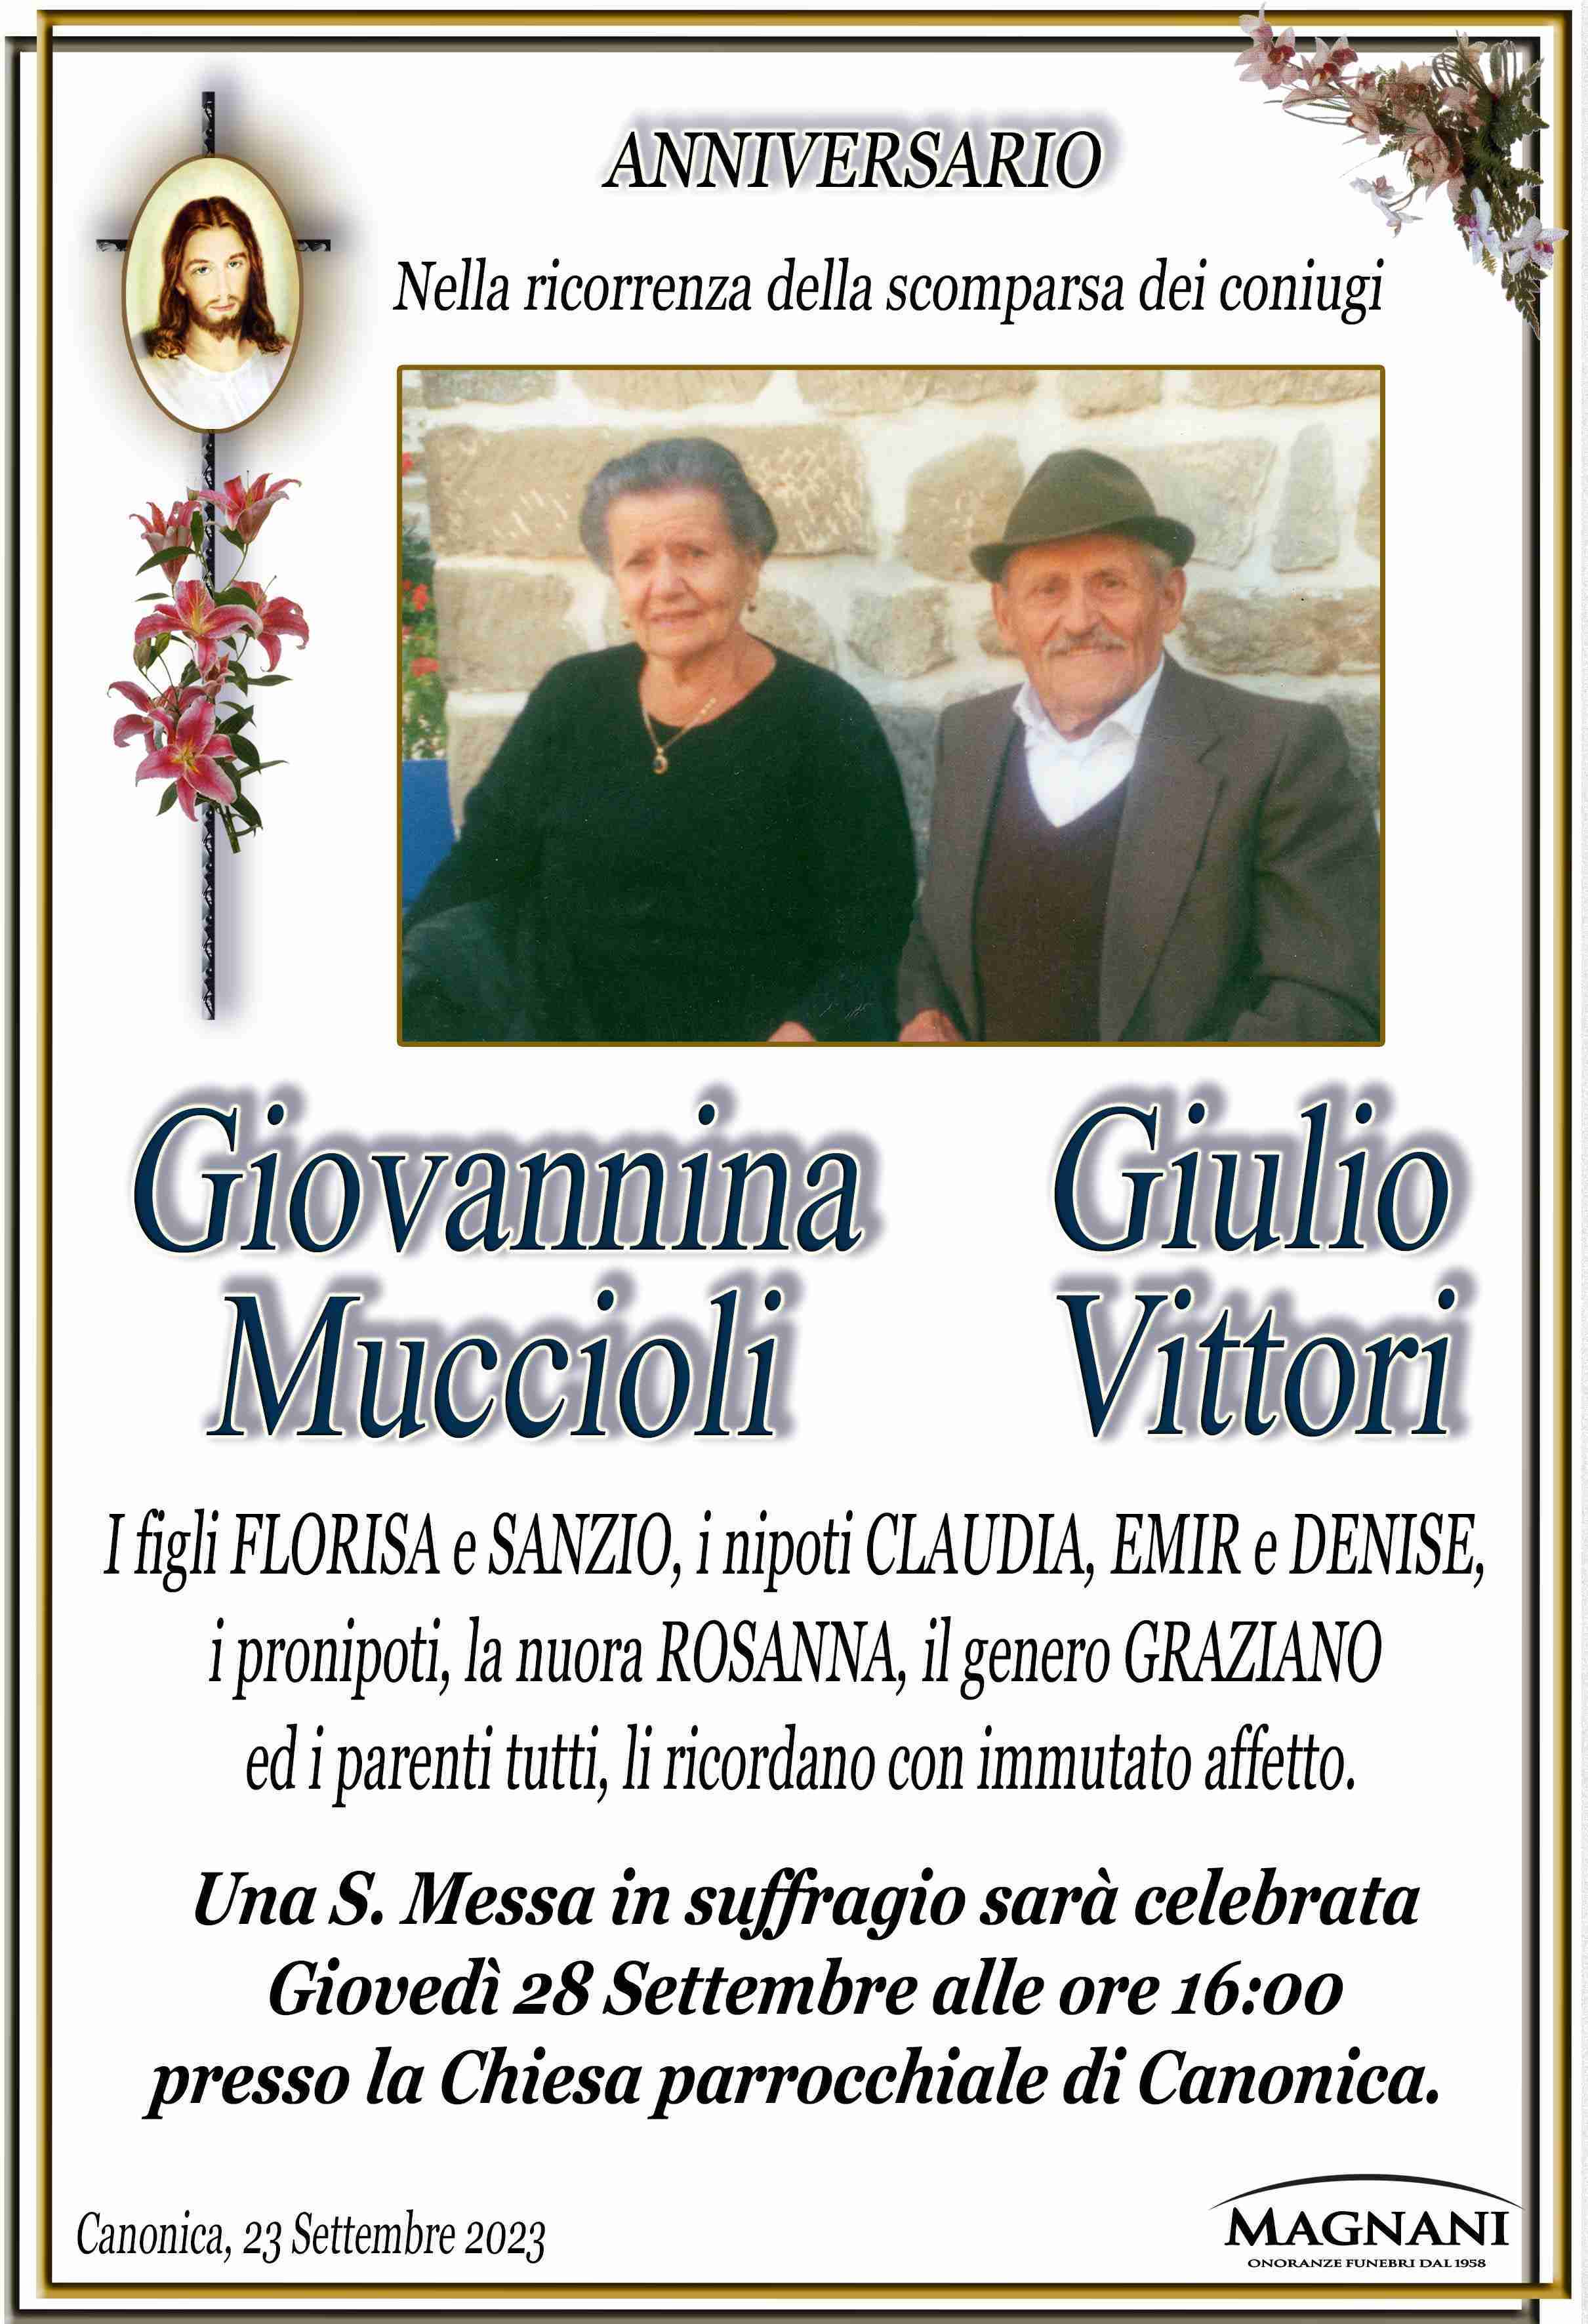 Giovannina Muccioli e Giulio Vittori